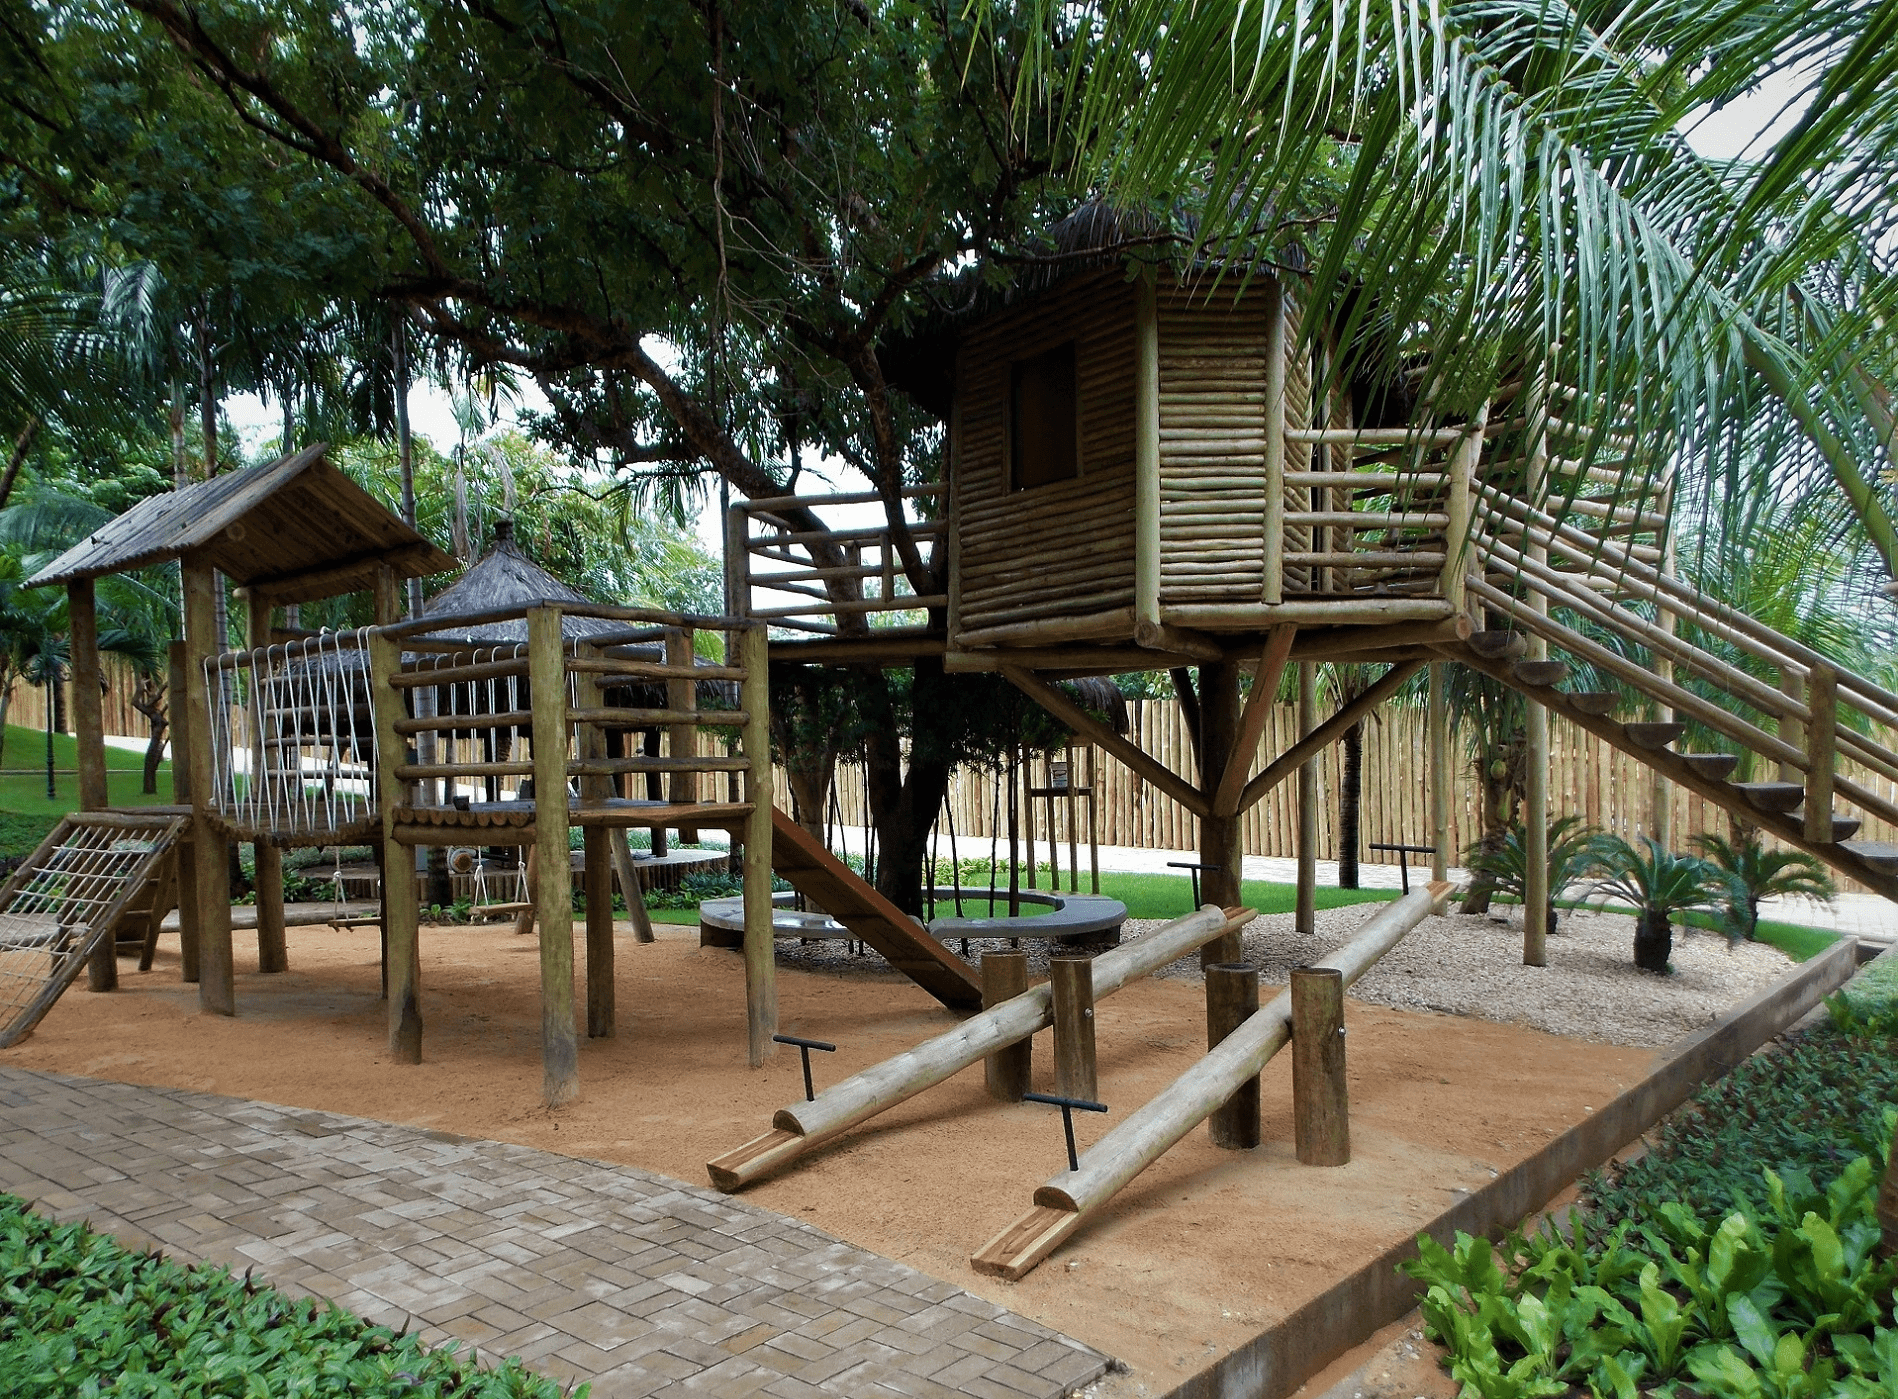 Casa da árvore confeccionada com estrutura e fechamentos de eucalipto tratado. Estação de playground com balanço, gangorra, escorrega, Escalada, ponte pencil e casa do Tarzan confeccionados com eucalipto tratado.